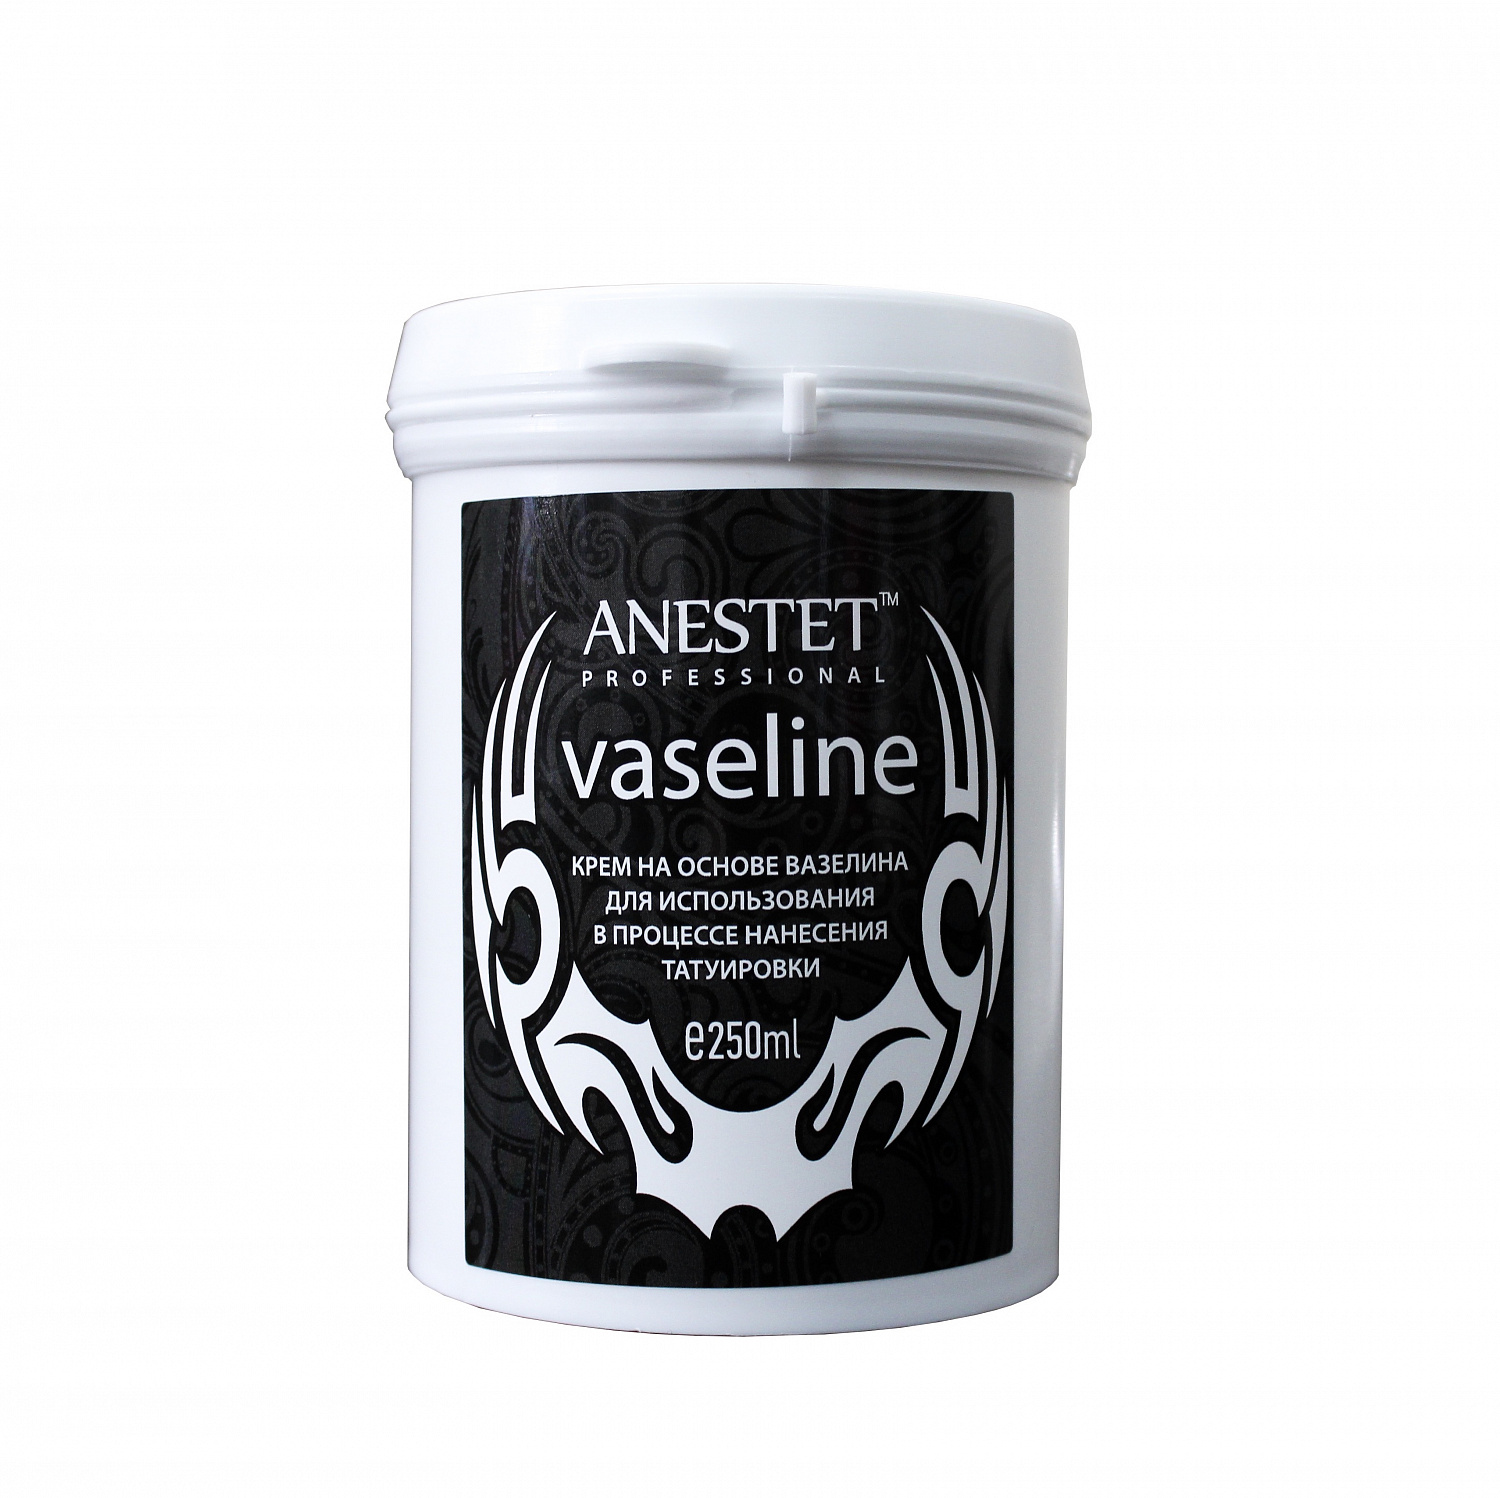 Крем вазелин профессиональный ANESTET professional Vaseline (Анестет), 250 мл